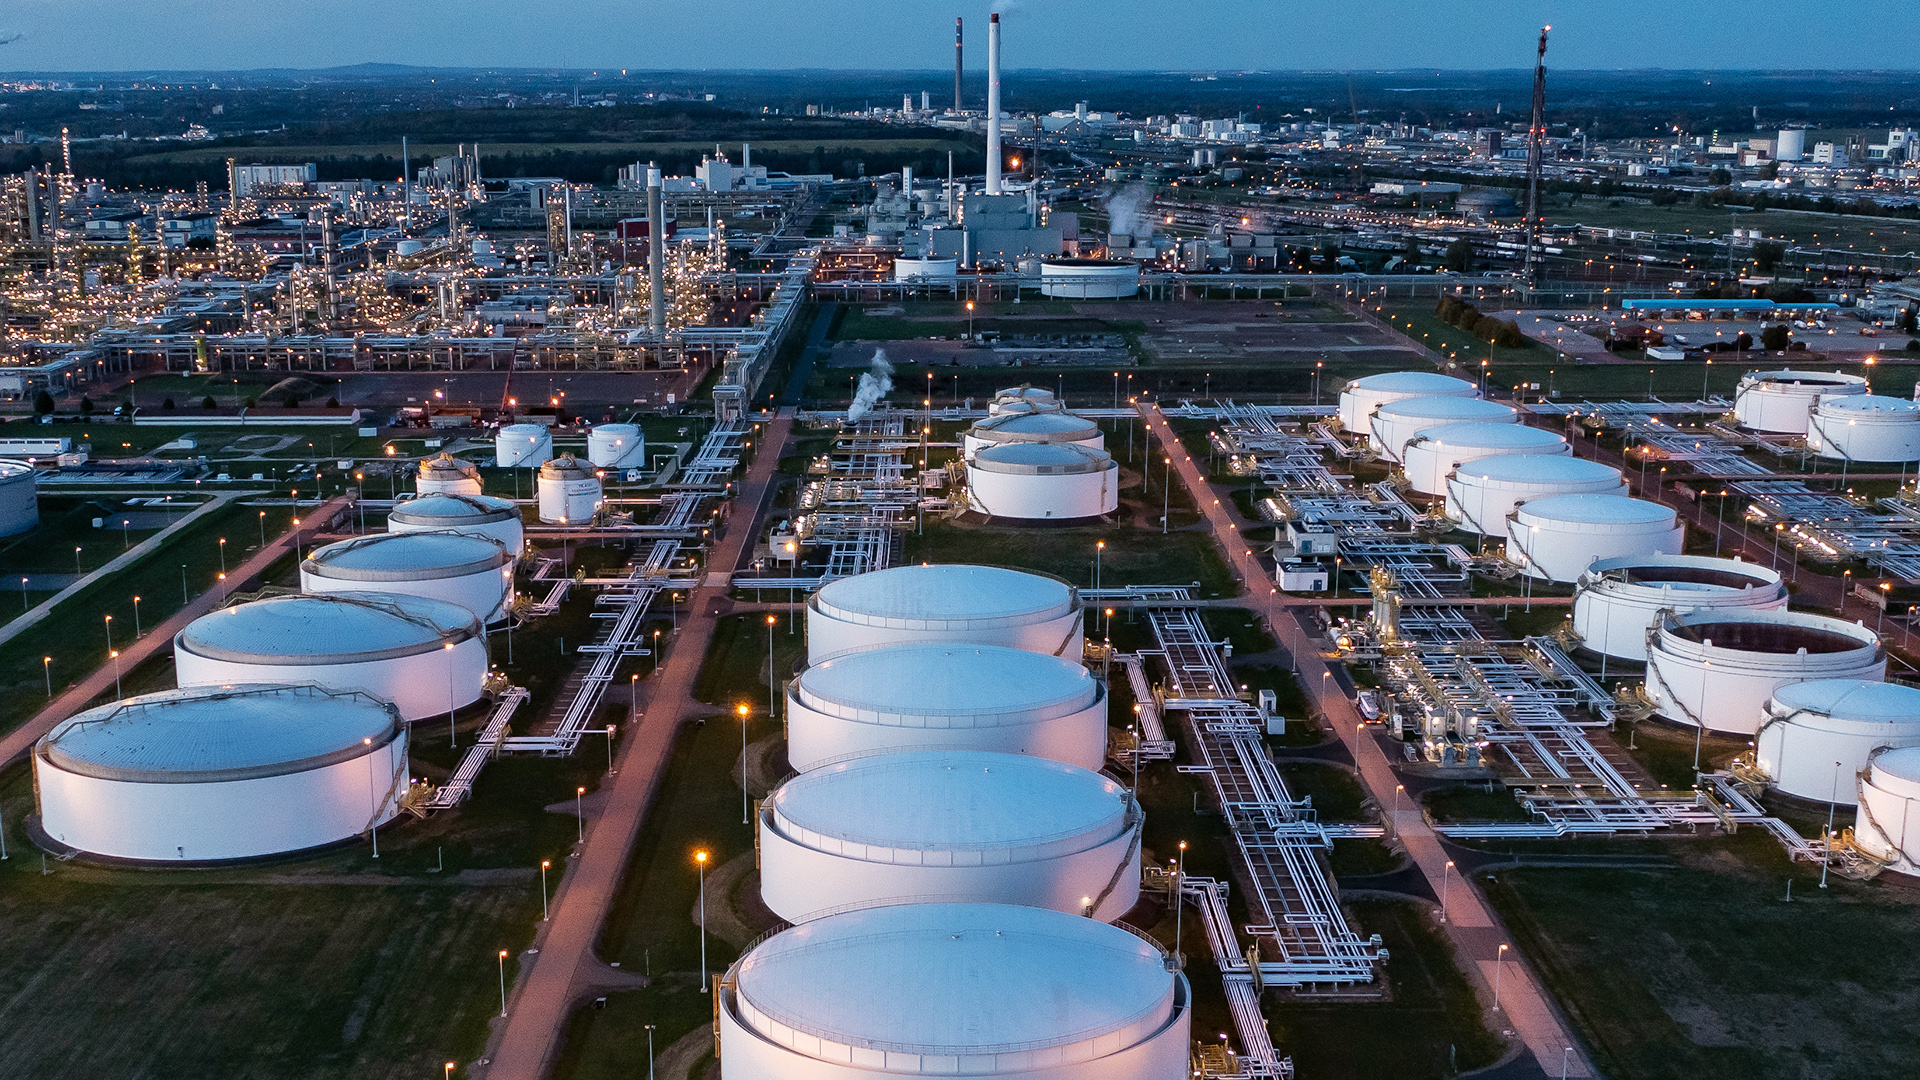 Hinter dem beleuchteten Tanklager ragen die Anlagen der Total-Raffinerie und des Chemieparks in die Höhe. | dpa